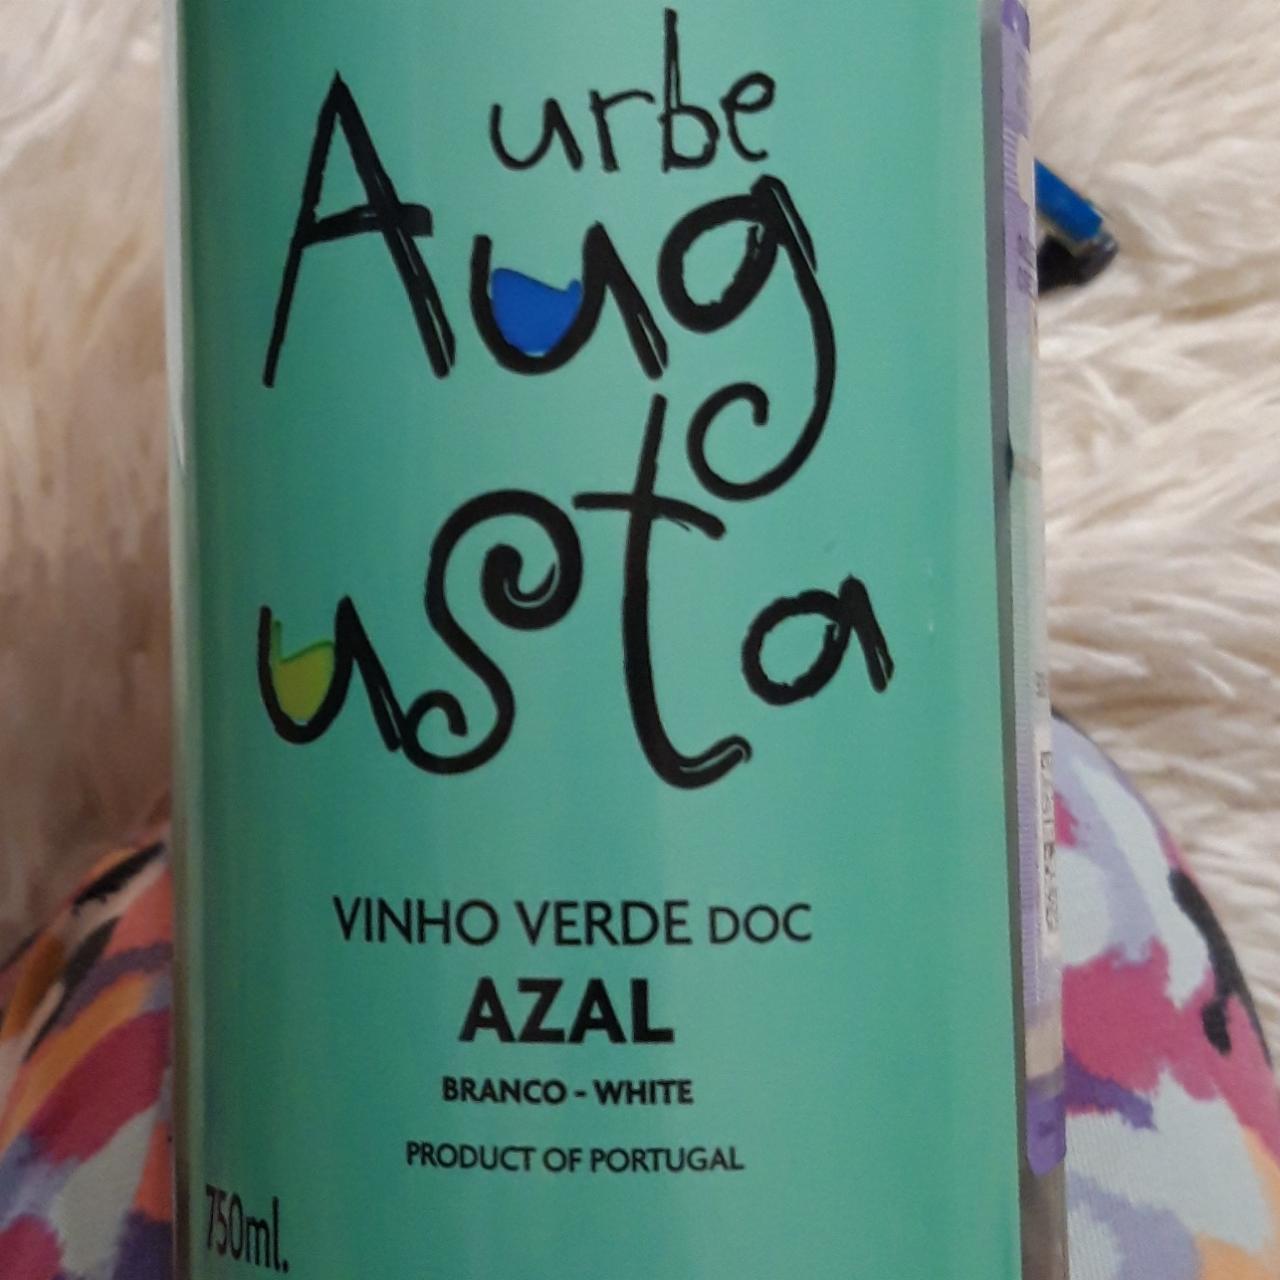 Фото - вино белое полусухое Азаль Док Виньо Верде Урбе Аугушта